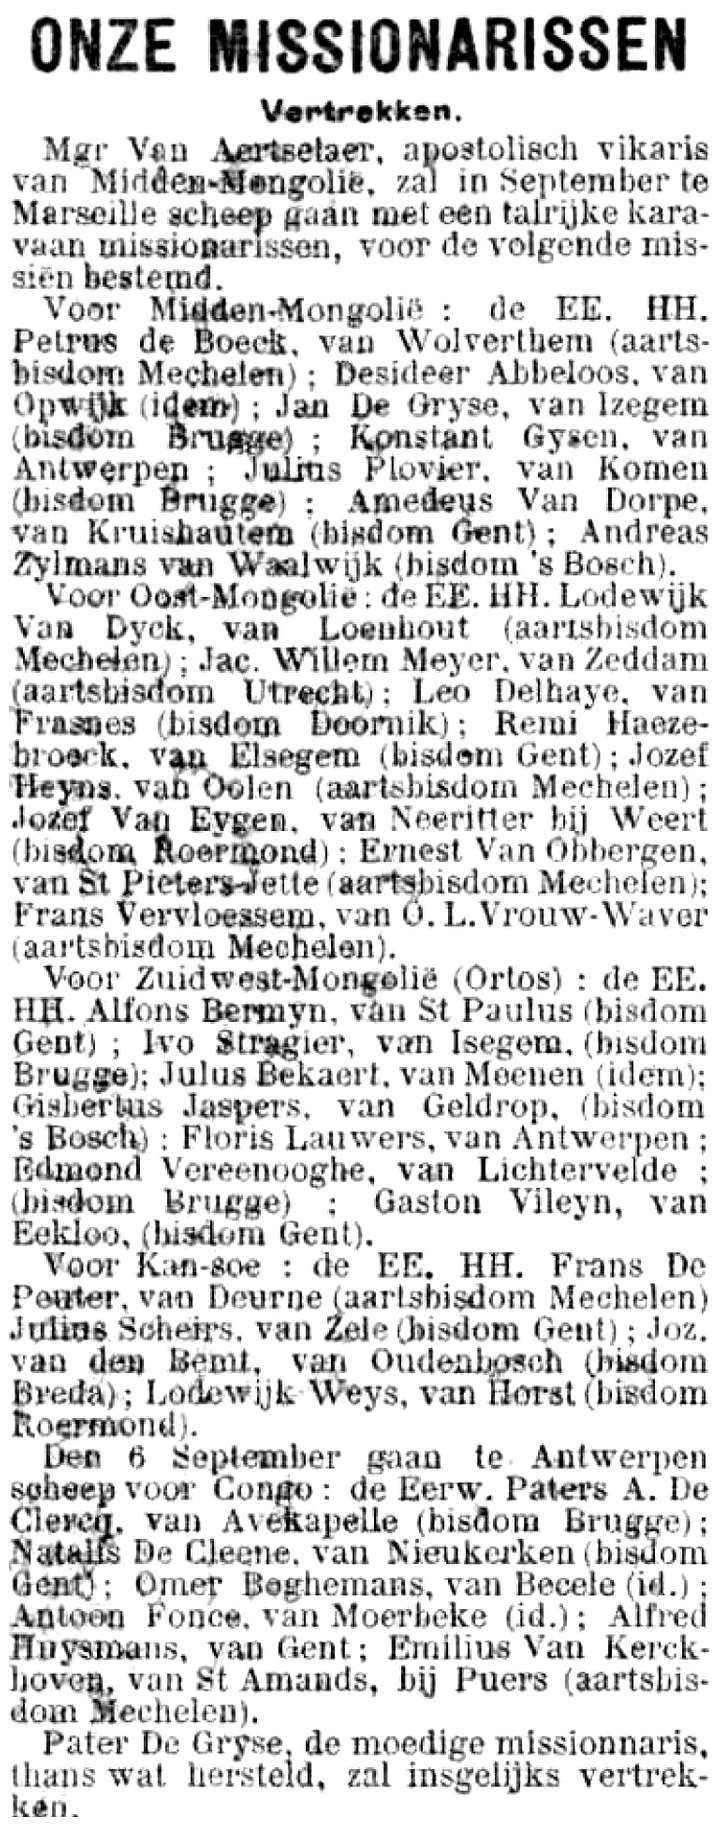 Gazet van Antwerpen (11/8/1898), Onze missionarissen vertrekken, mgr. Van Dyck e.a. schepen in te Marseille